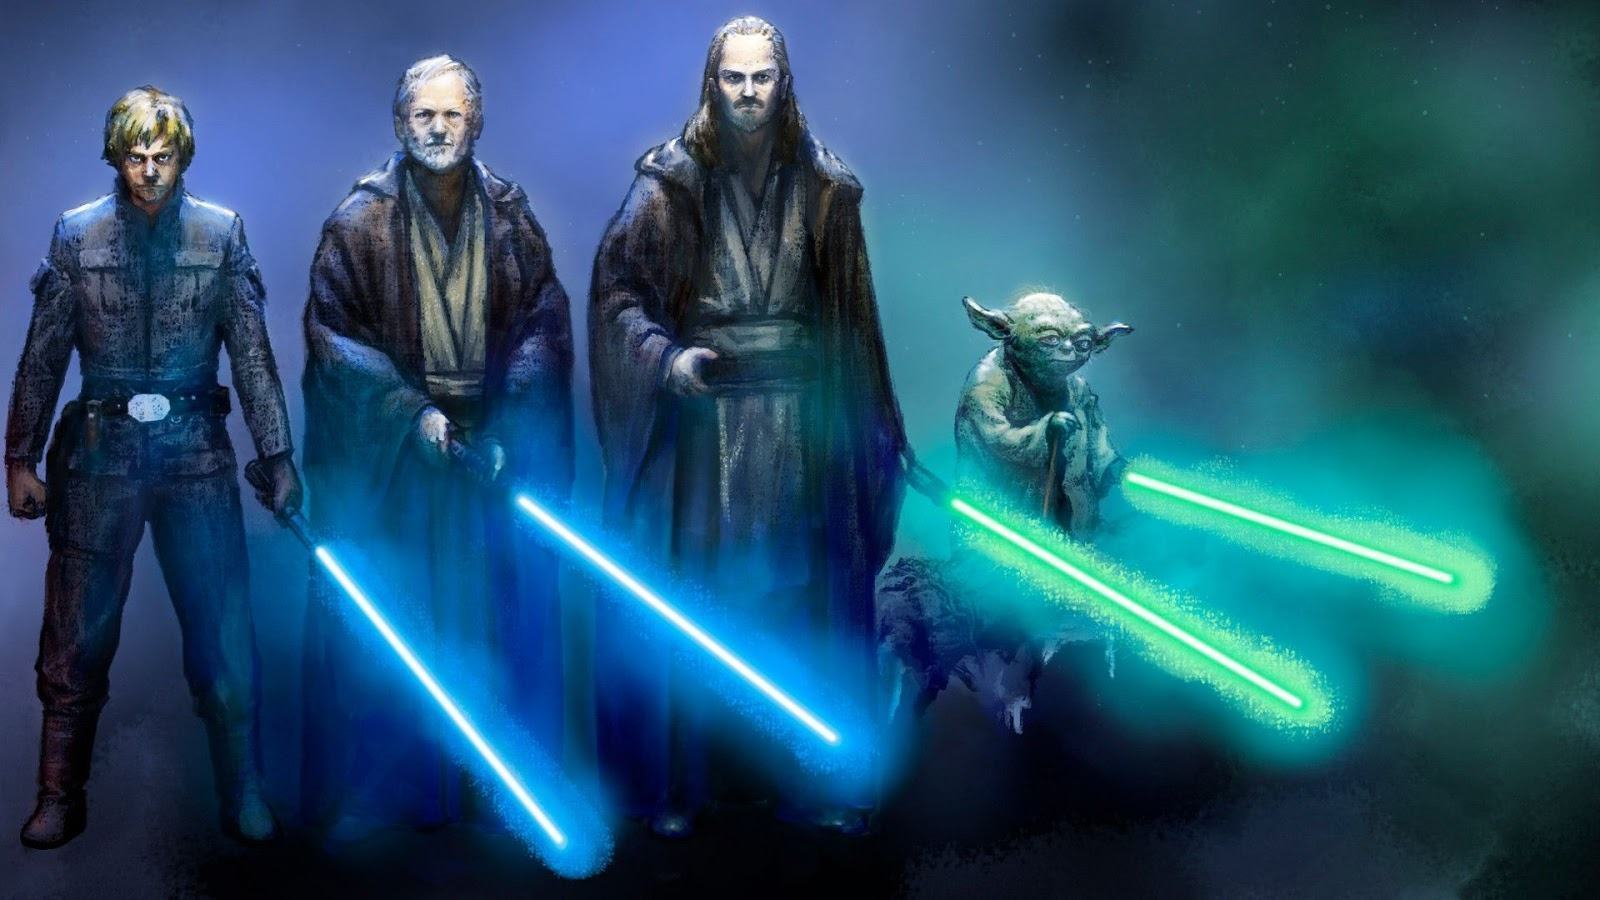 Australianos declaram seguir a “religião Jedi” em pesquisa. Ateus criticam!